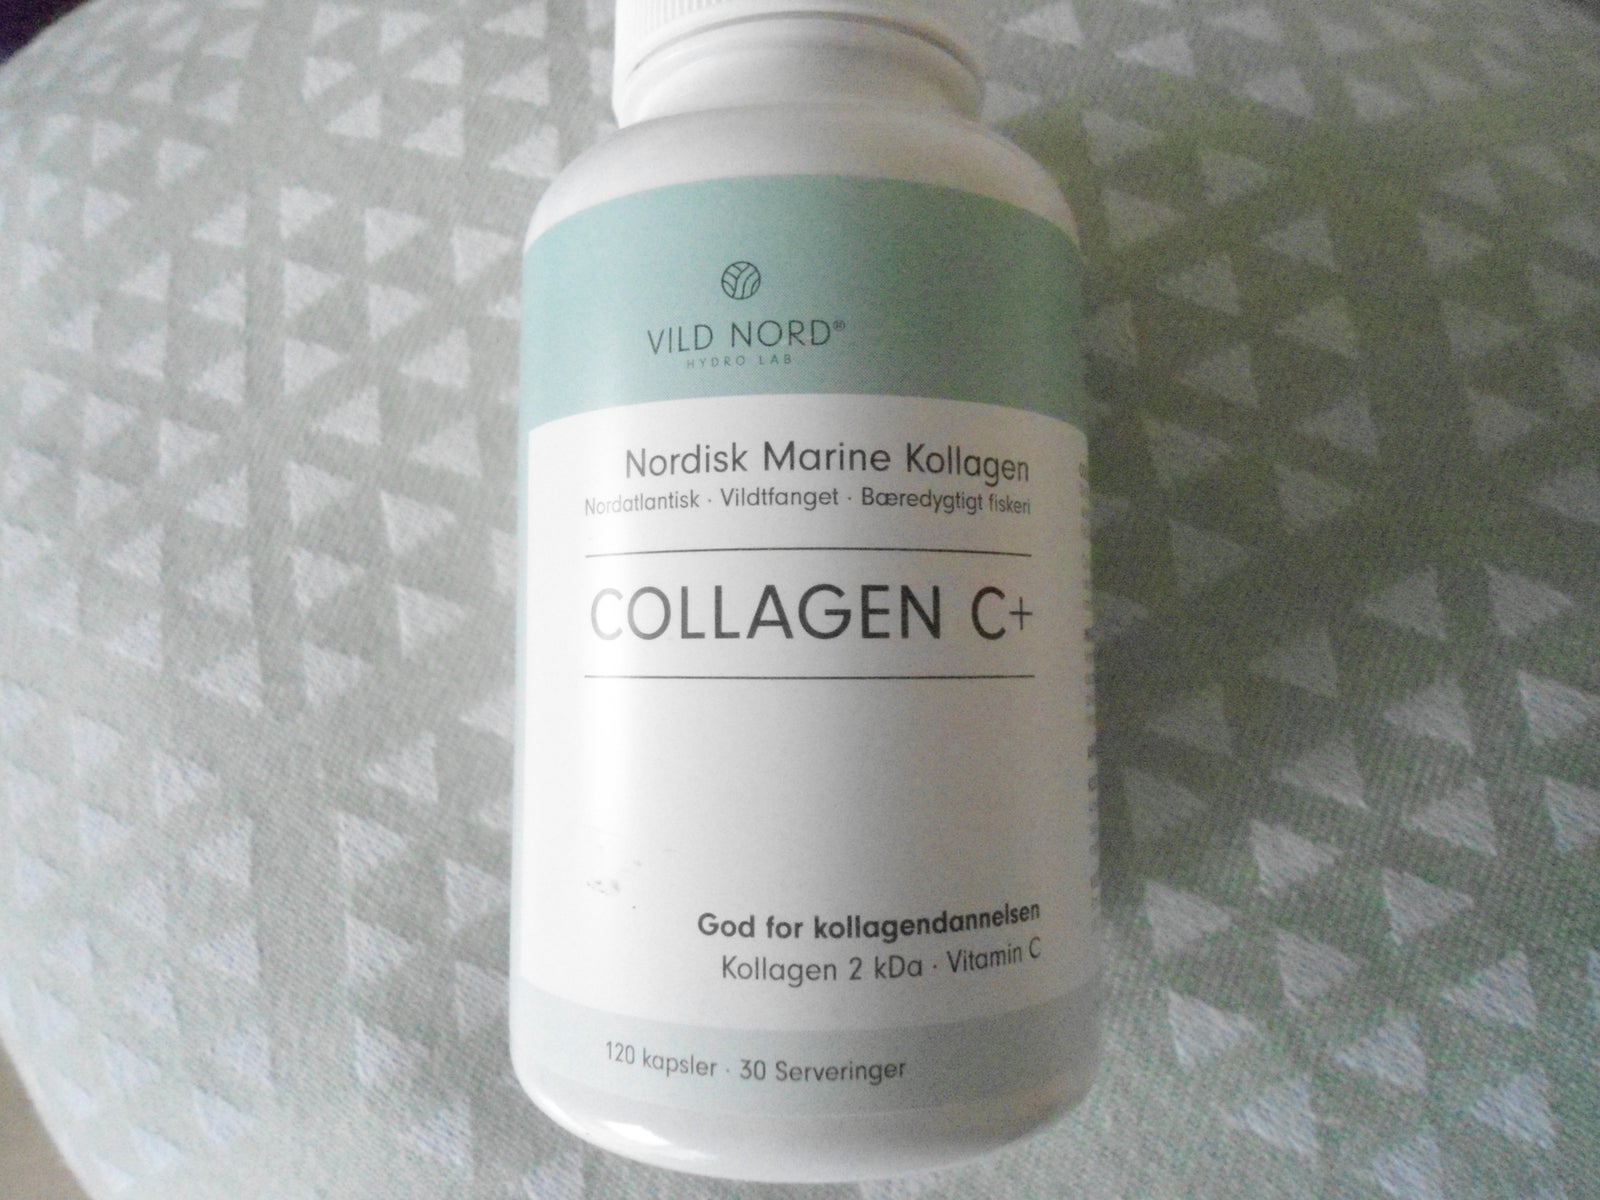 Kosttilskud, vild nord collagen c+ kapsler